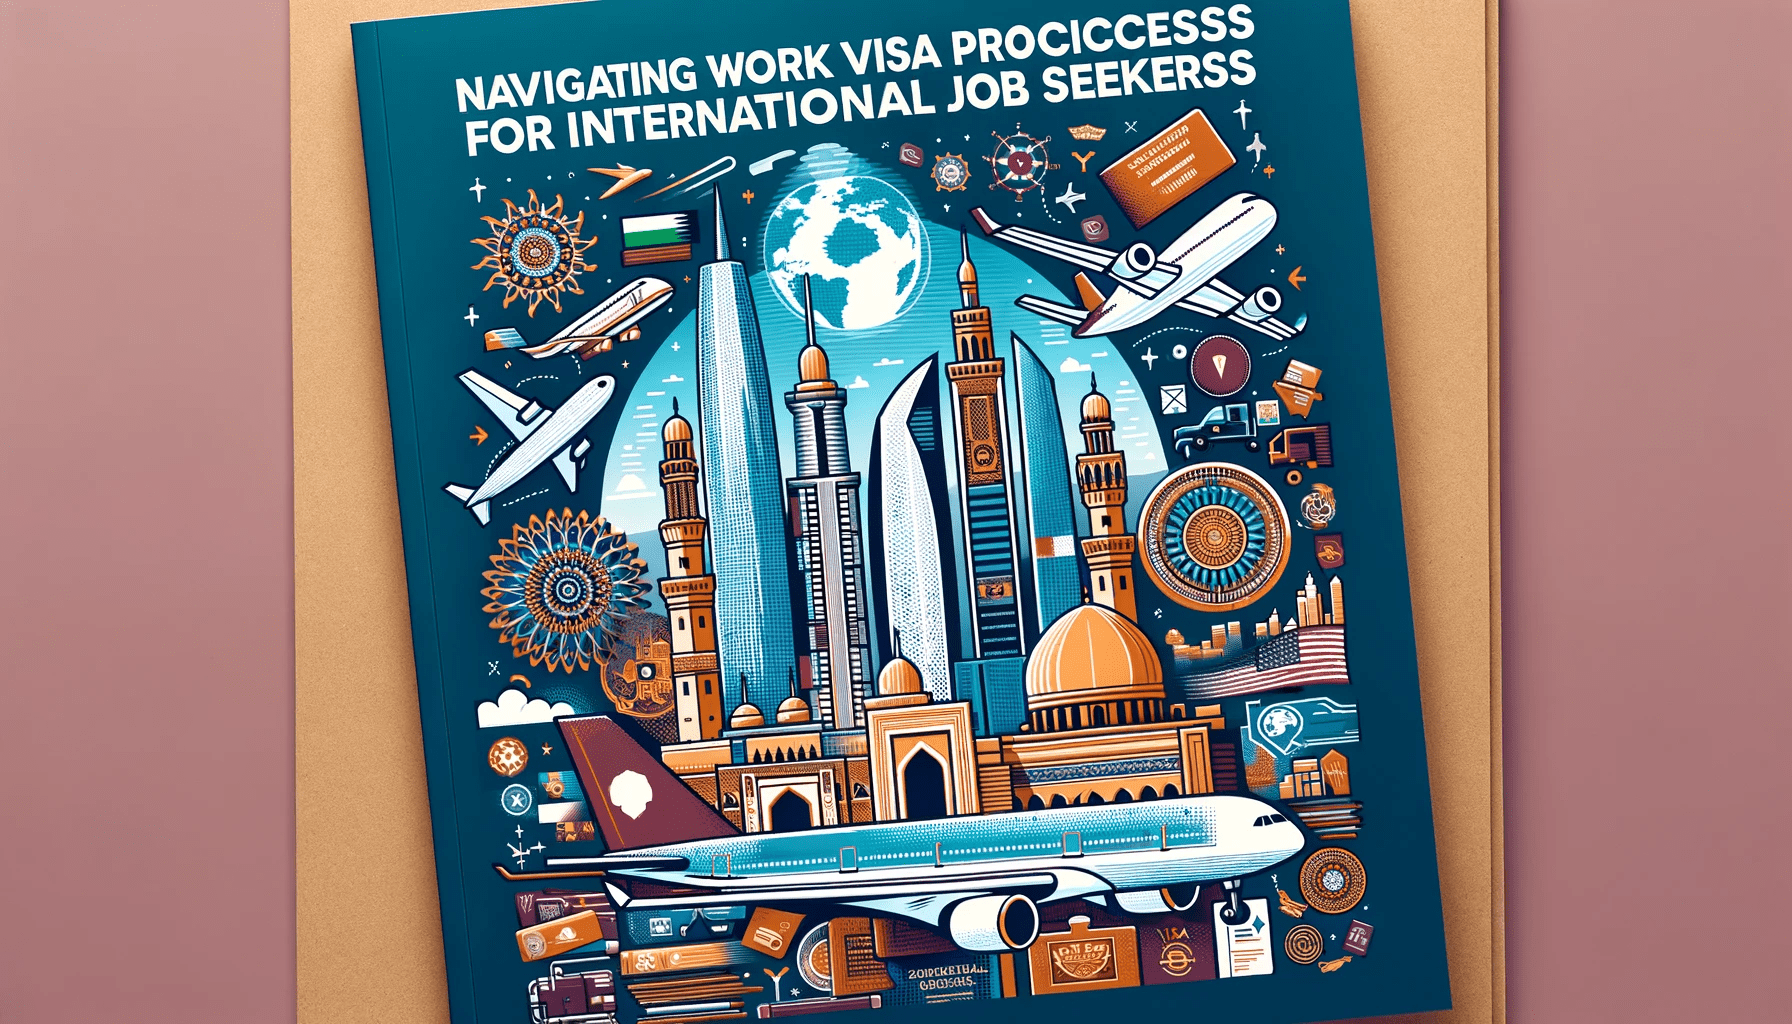 Work Visa Processes